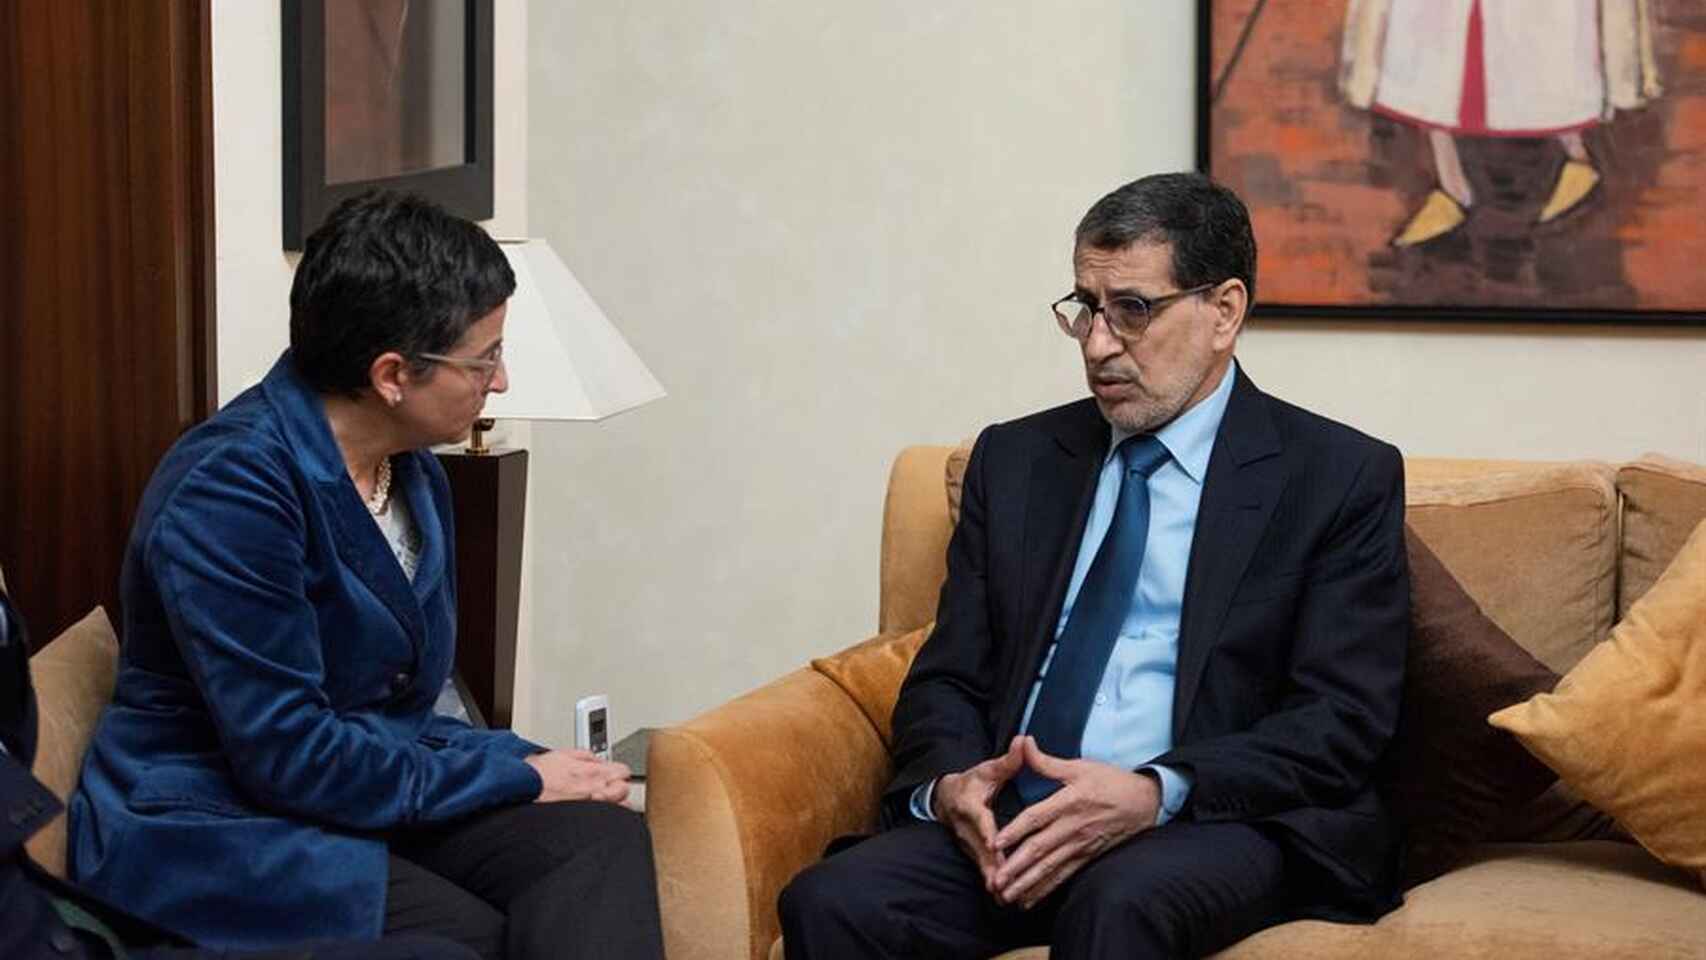 La ministra de Asuntos Exteriores, Arancha González Laya, en una reunión con el jefe de Gobierno del Reino de Marruecos, El Othmani, en Rabat